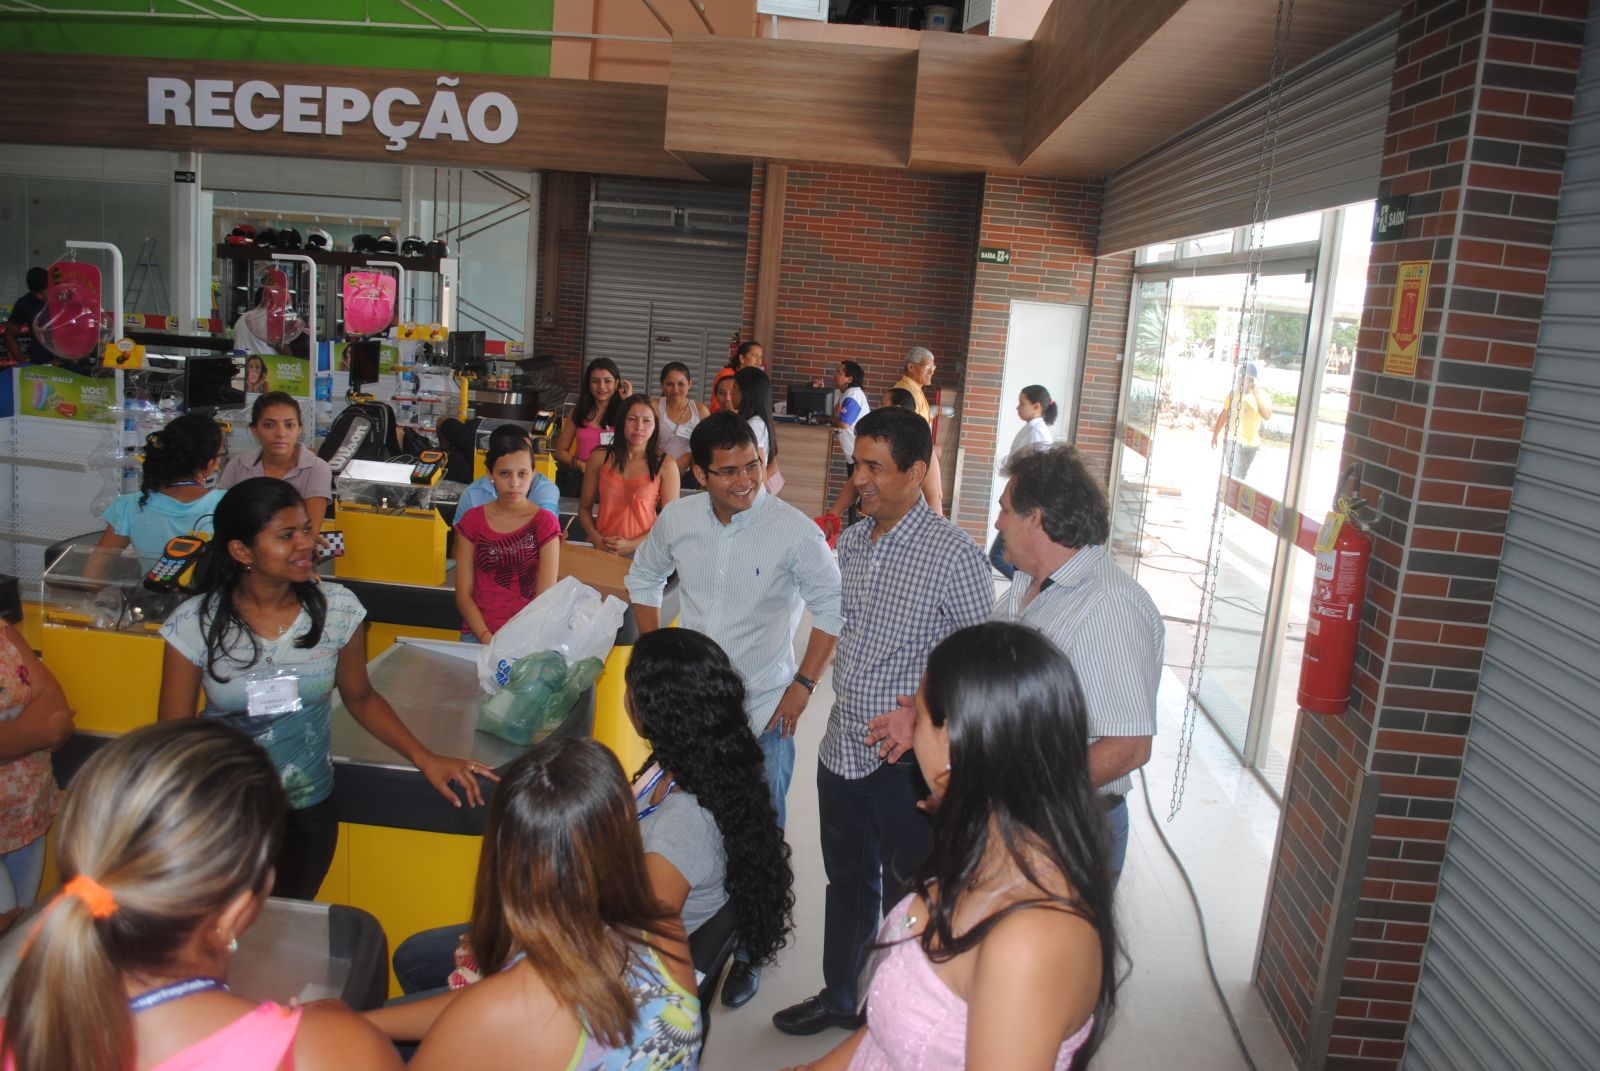 Eusébio Open Mall será inaugurado nesta sexta, trazendo emprego, renda e entretenimento